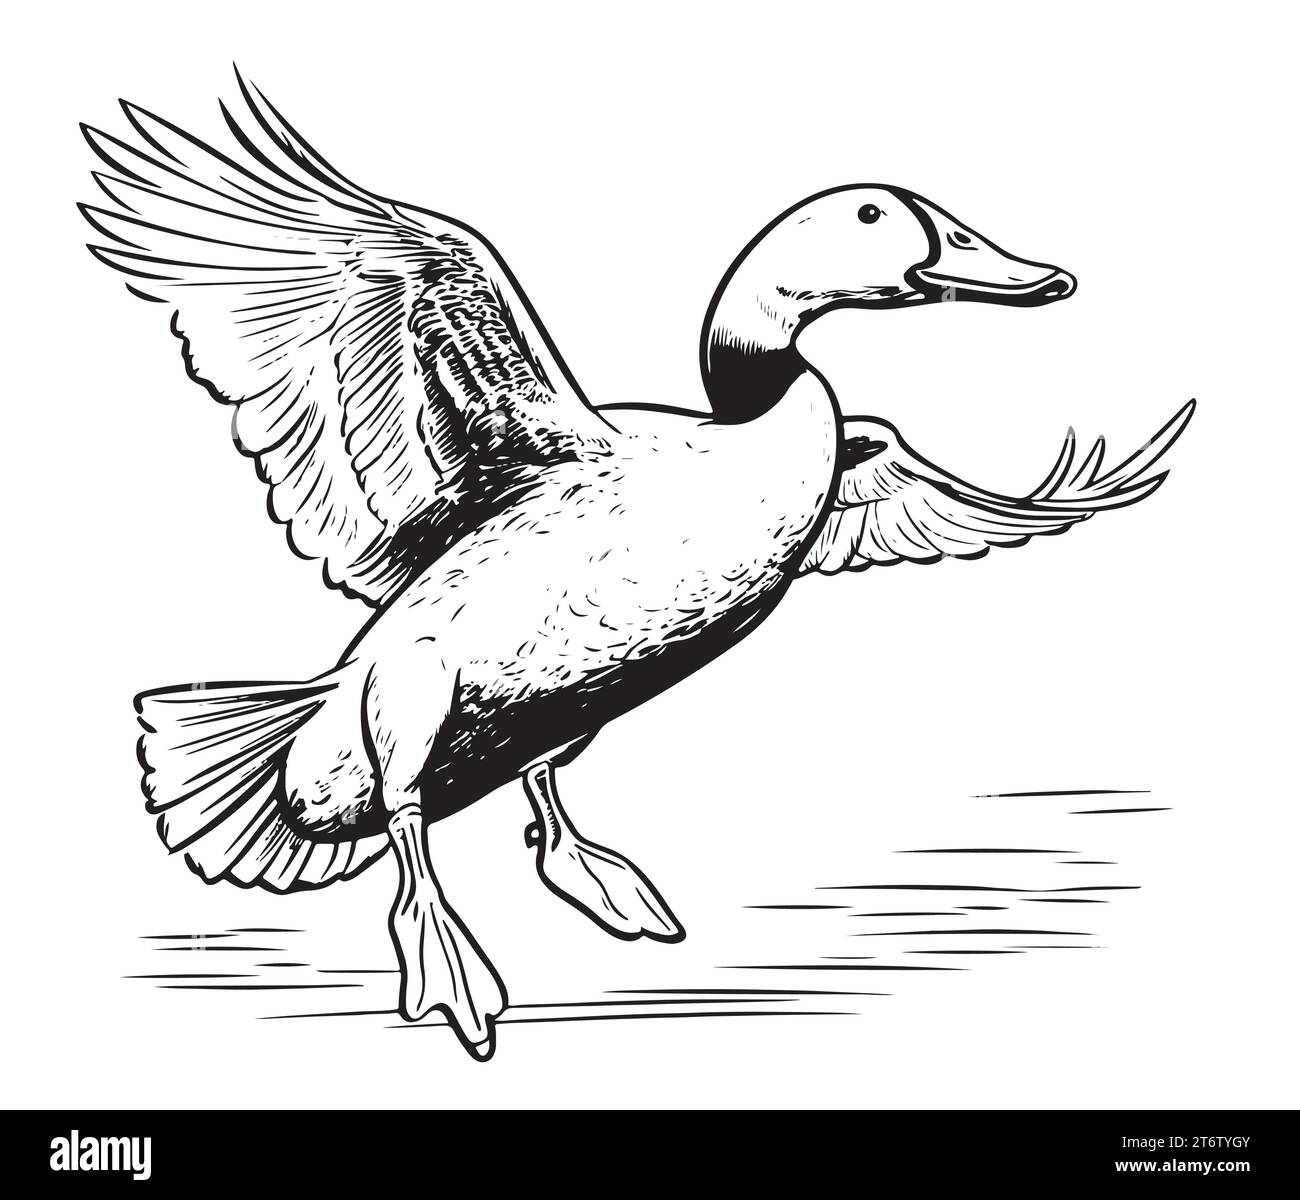 Duck flying sketch hand drawn Vector illustration Birds hunting Stock Vector